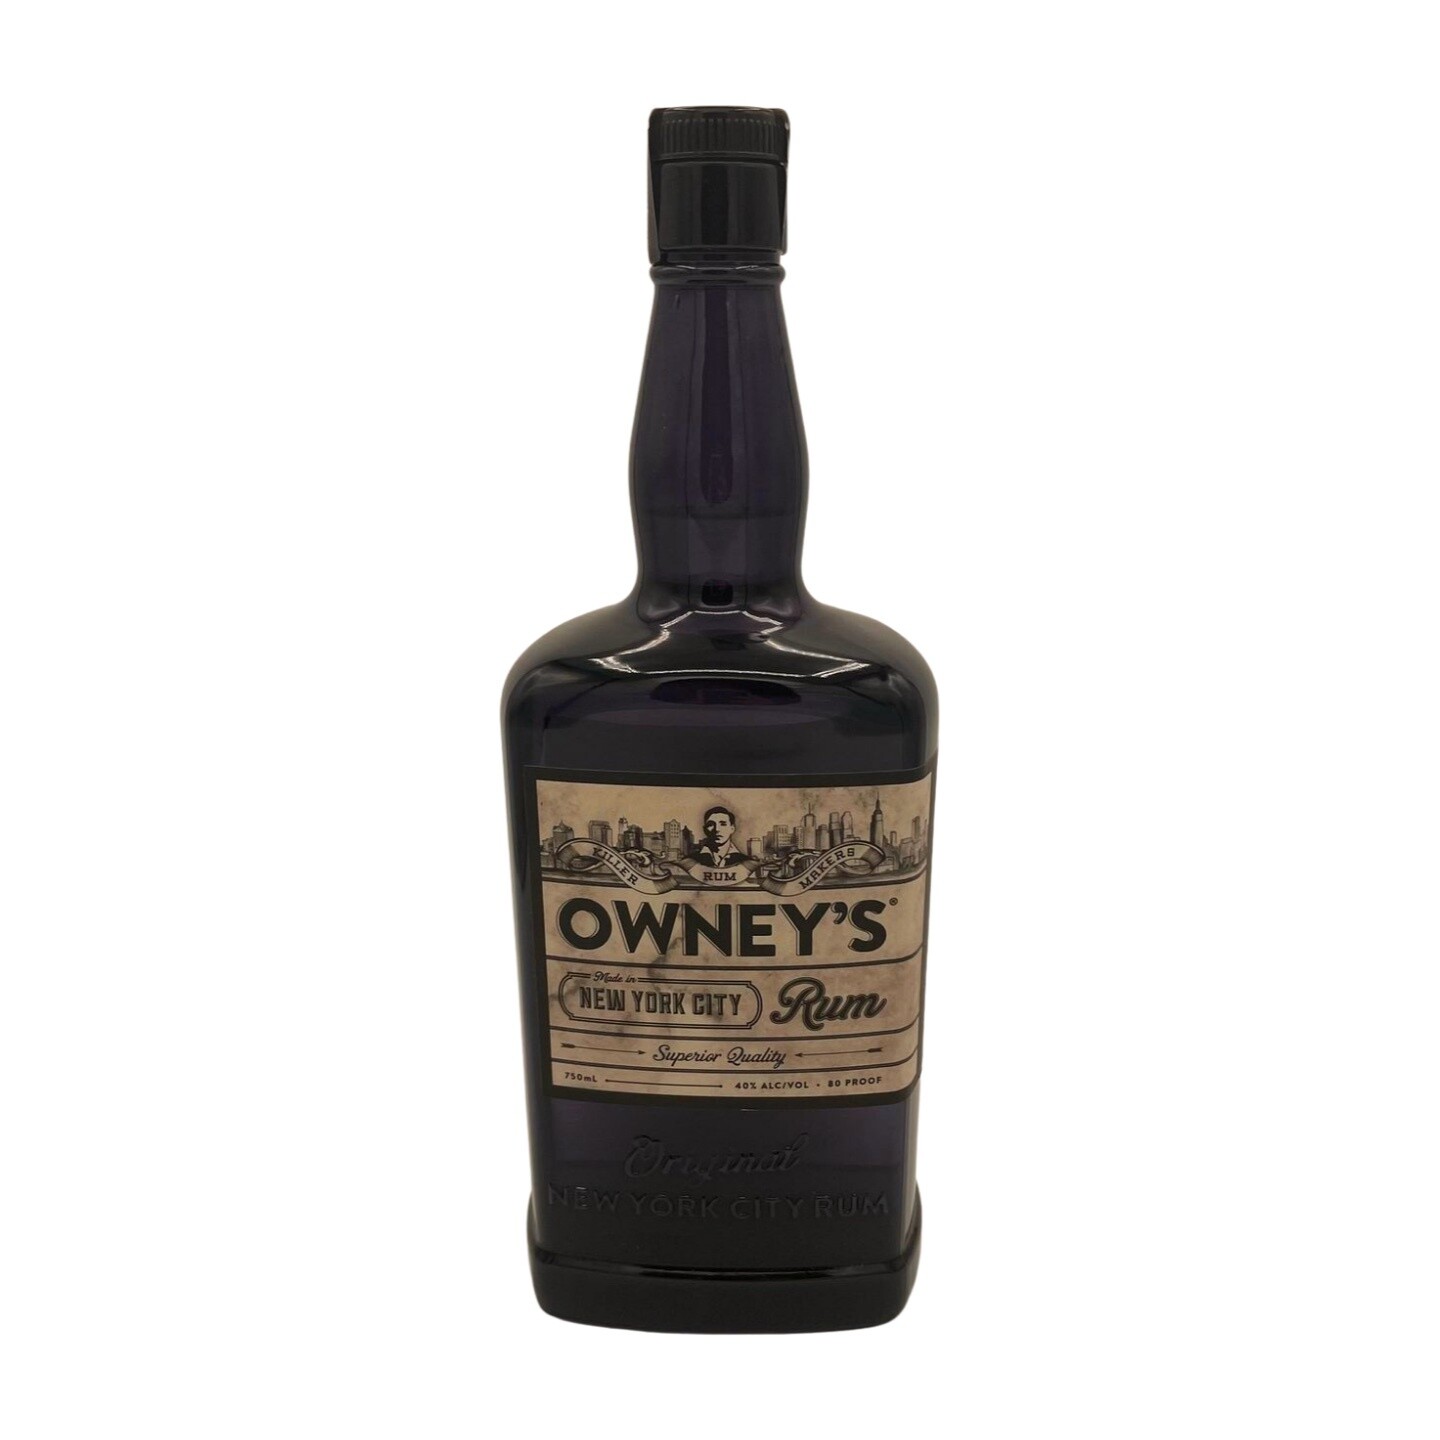 Owney's Original Rum